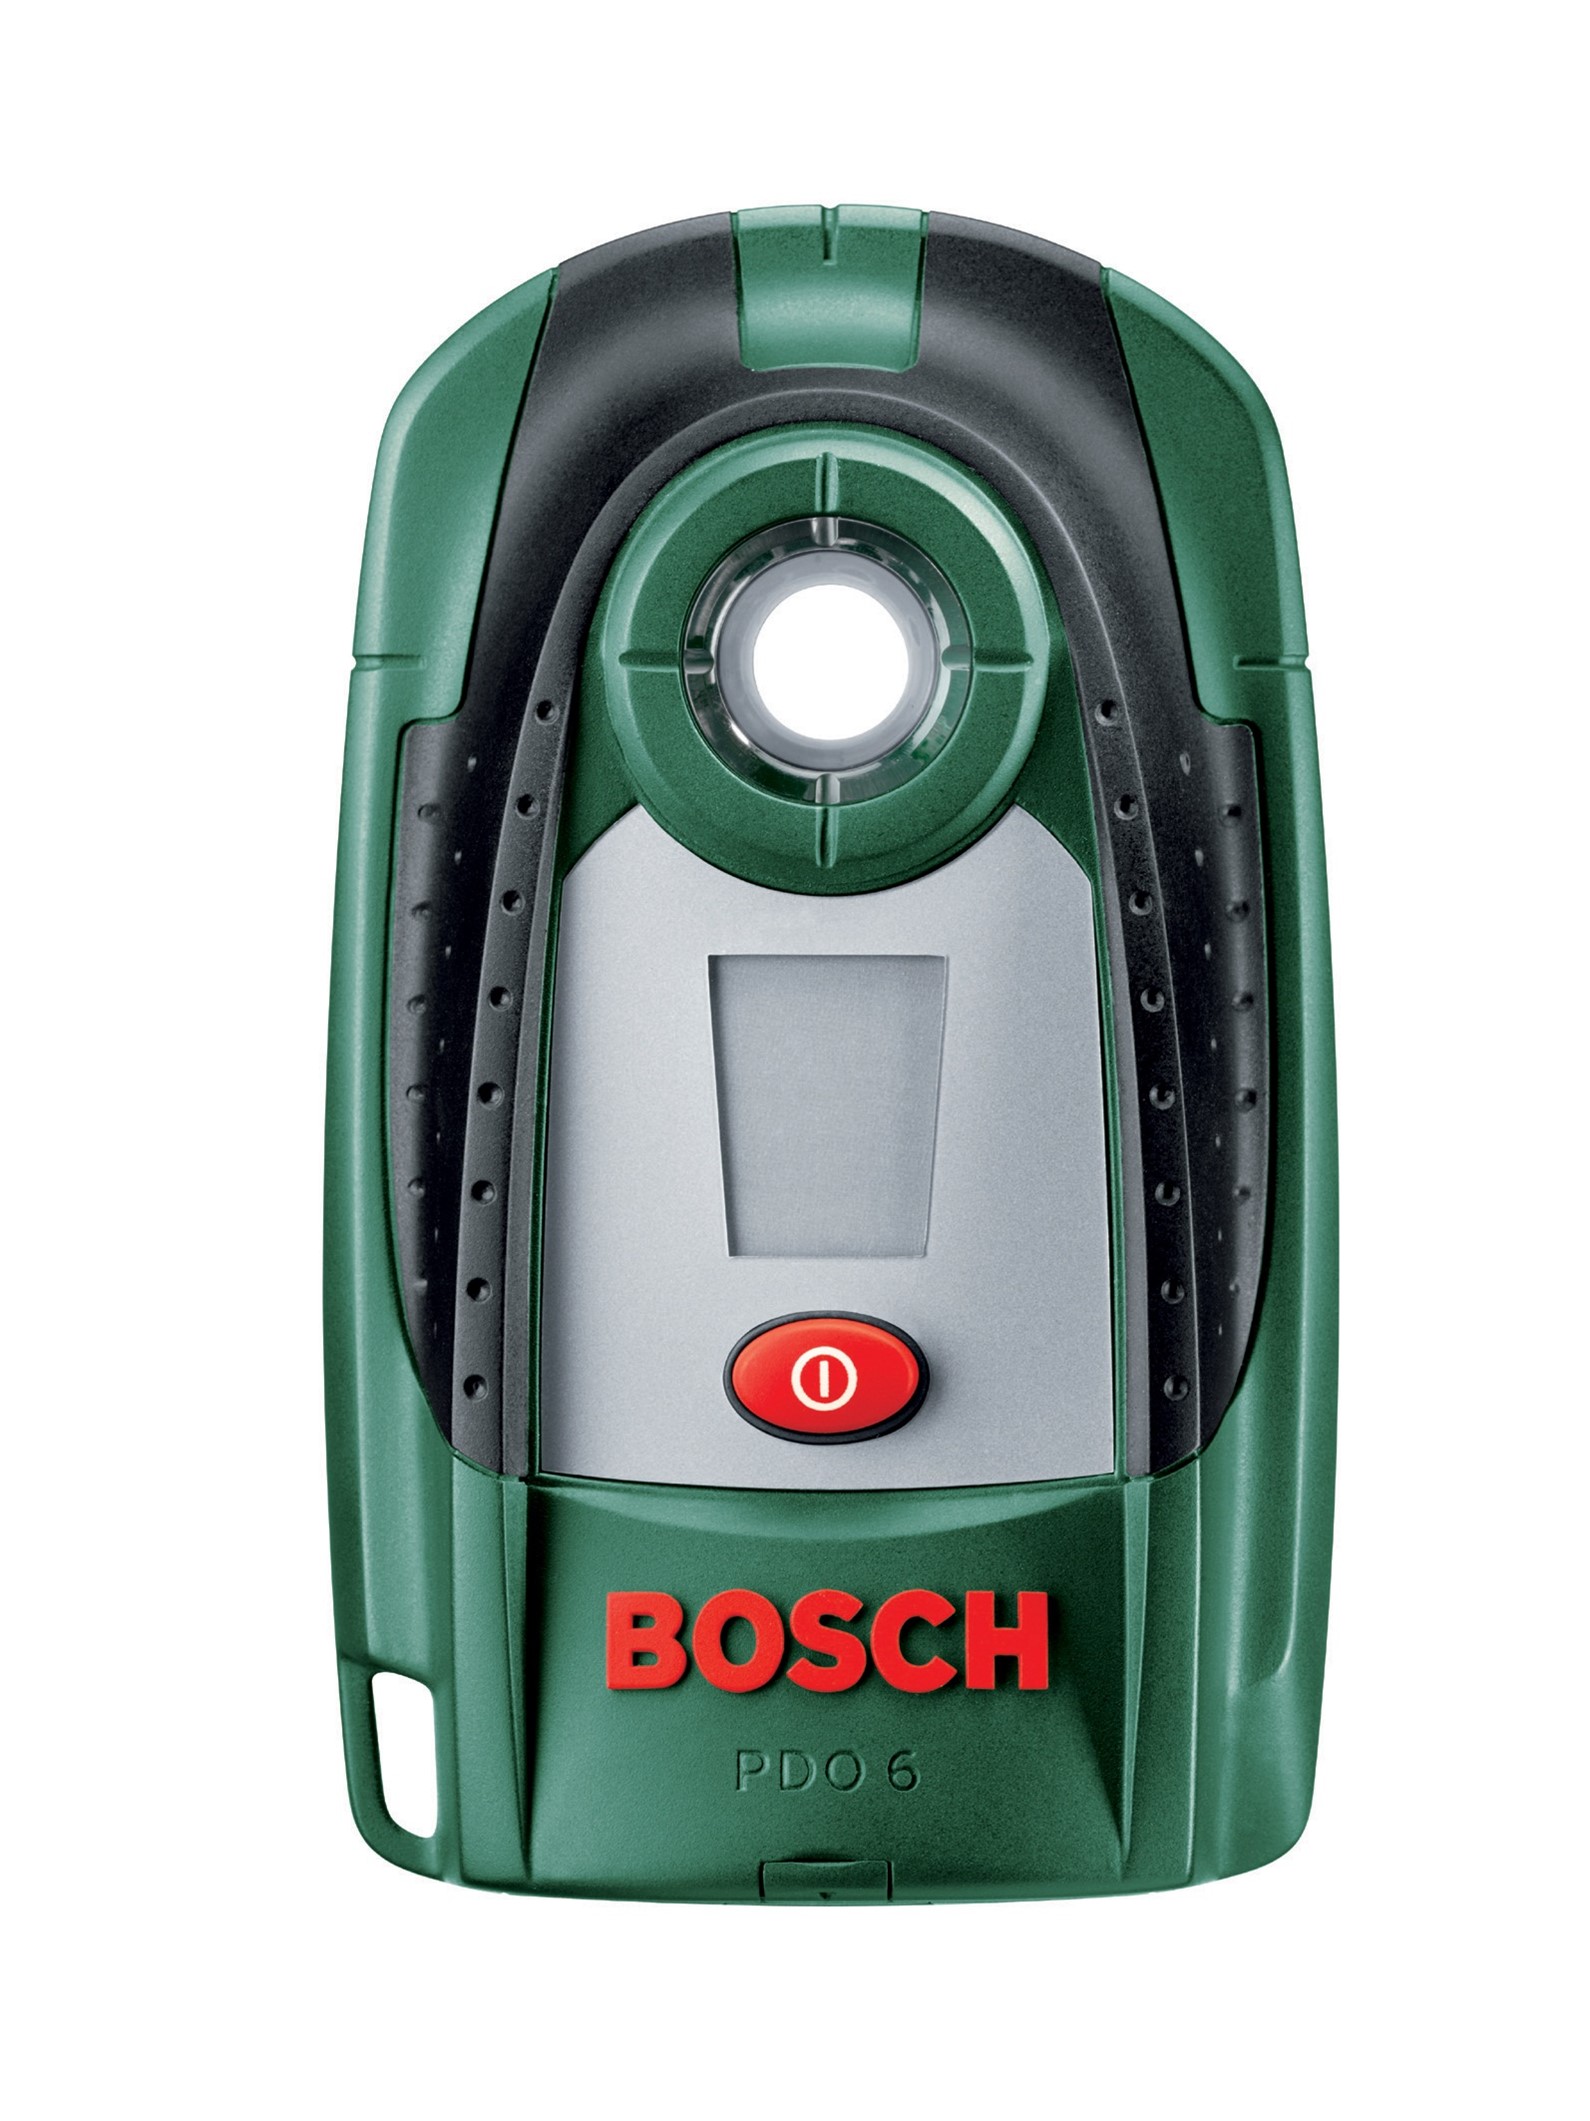 Детектор бош. Детектор Bosch PDO 6. Bosch PDO Multi 0603010000. Детектор Bosch PDO Multi. Детектор Bosch DIY Bosch PDO 6.